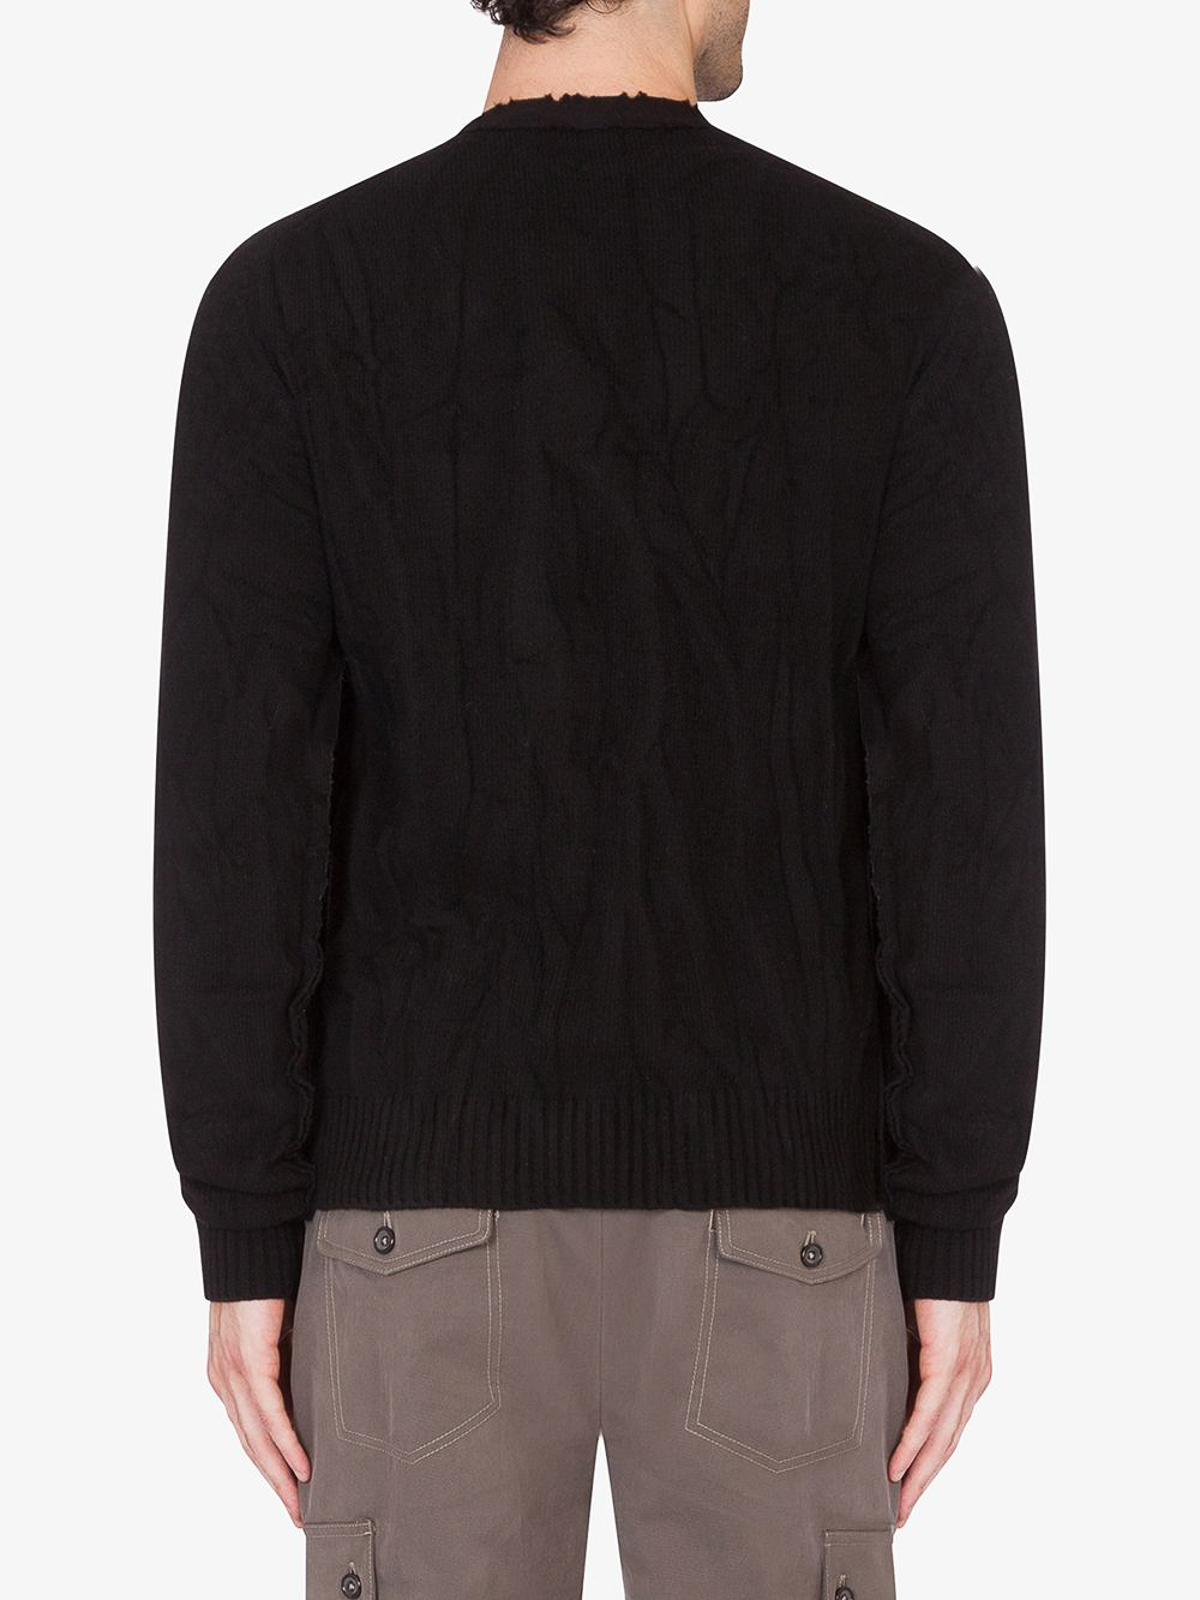 Shop Dolce & Gabbana Sweater Black